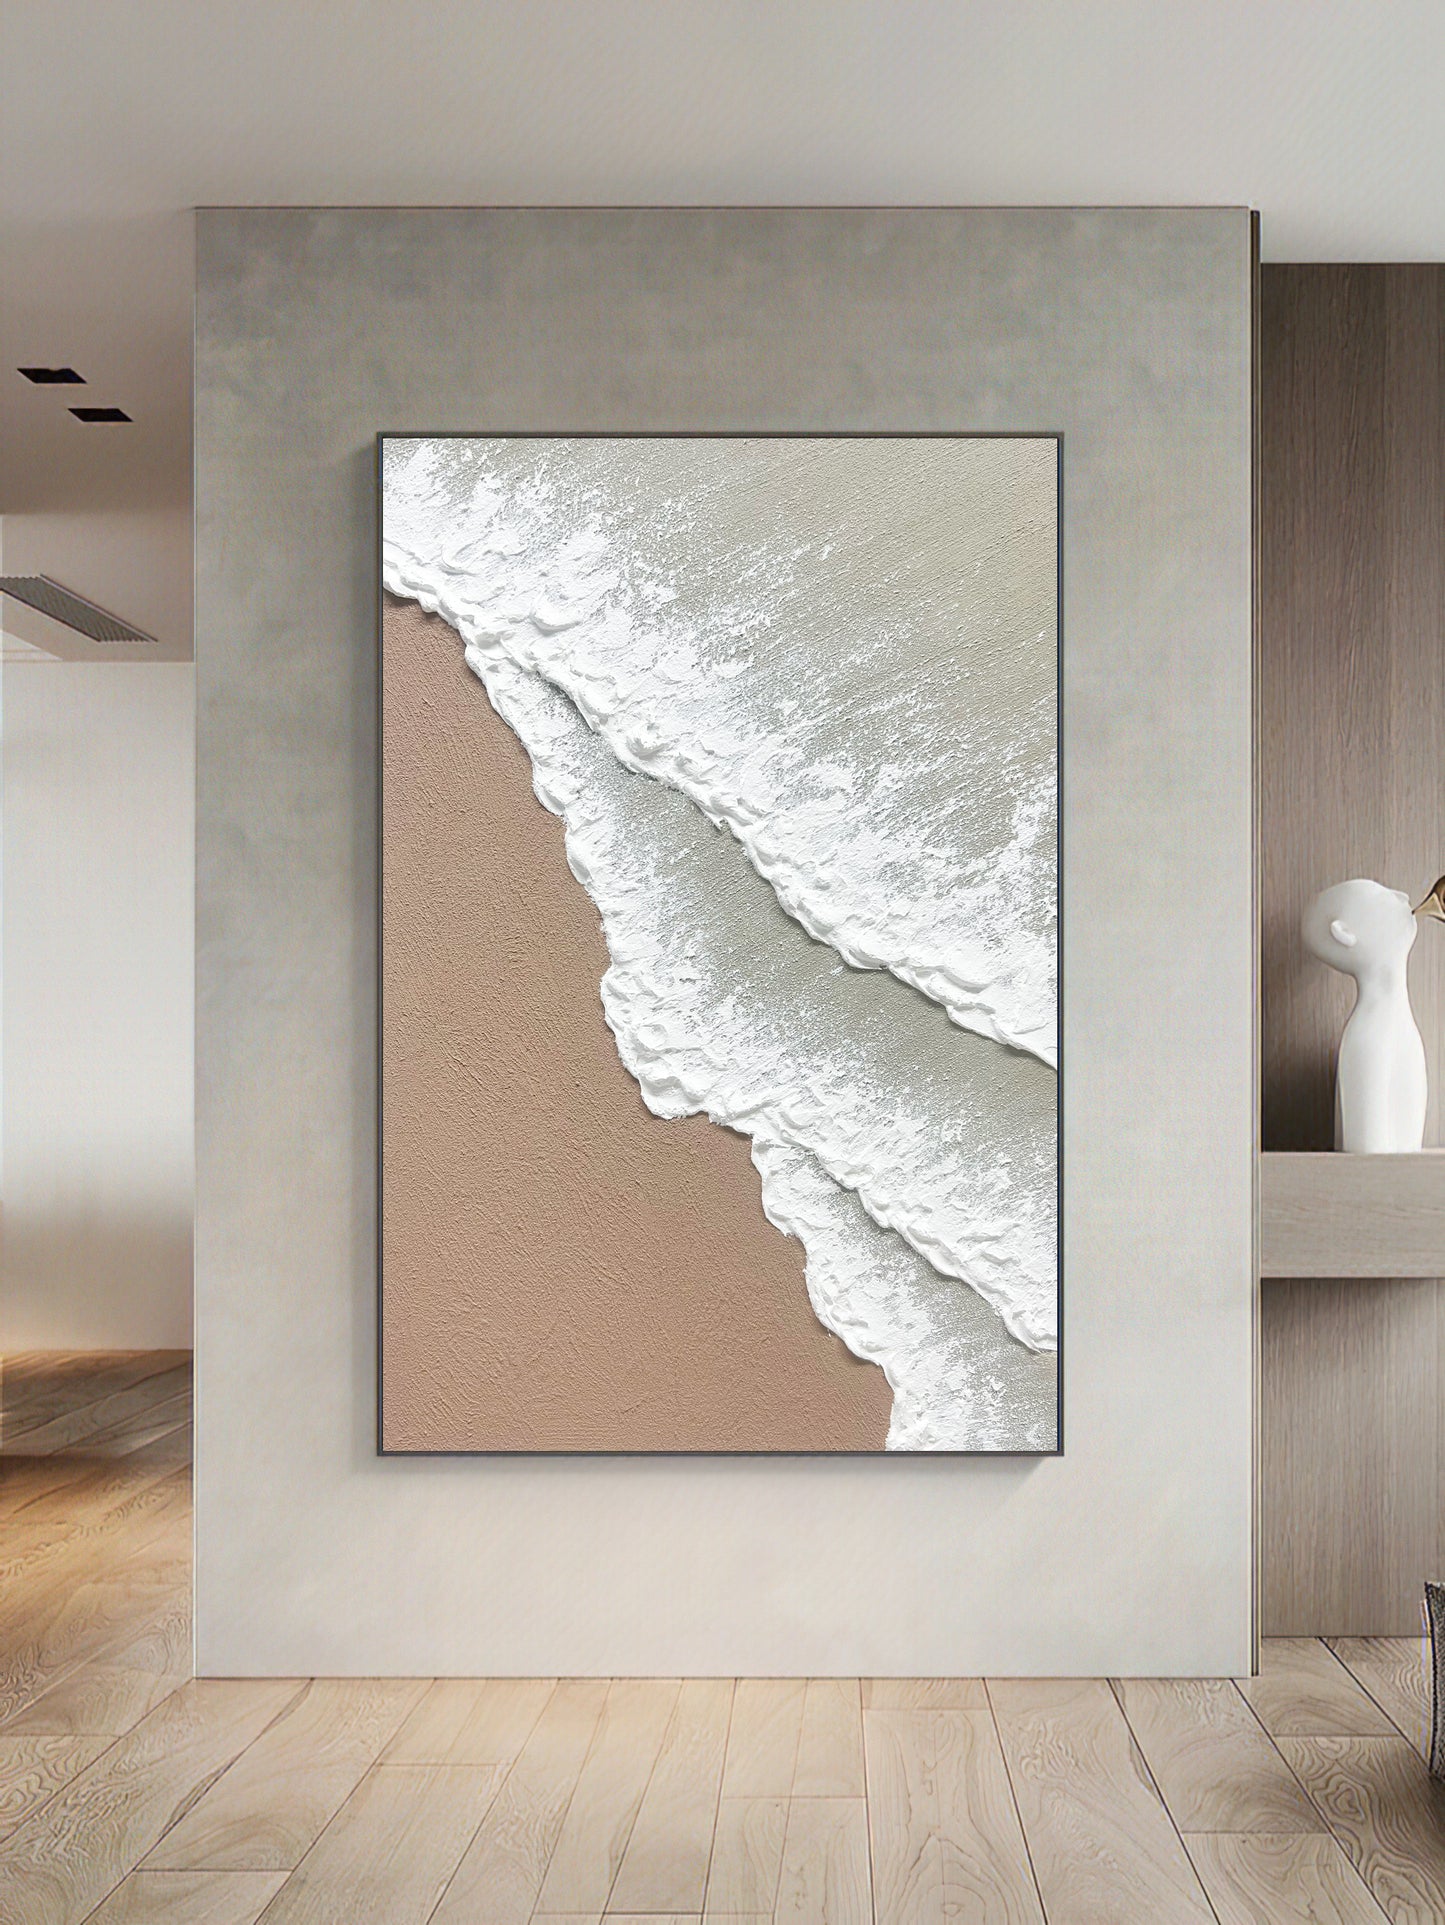 Abstract Ocean Painting 3D Ocean Texture Painting,Ocean Waves Painting Original Ocean Art